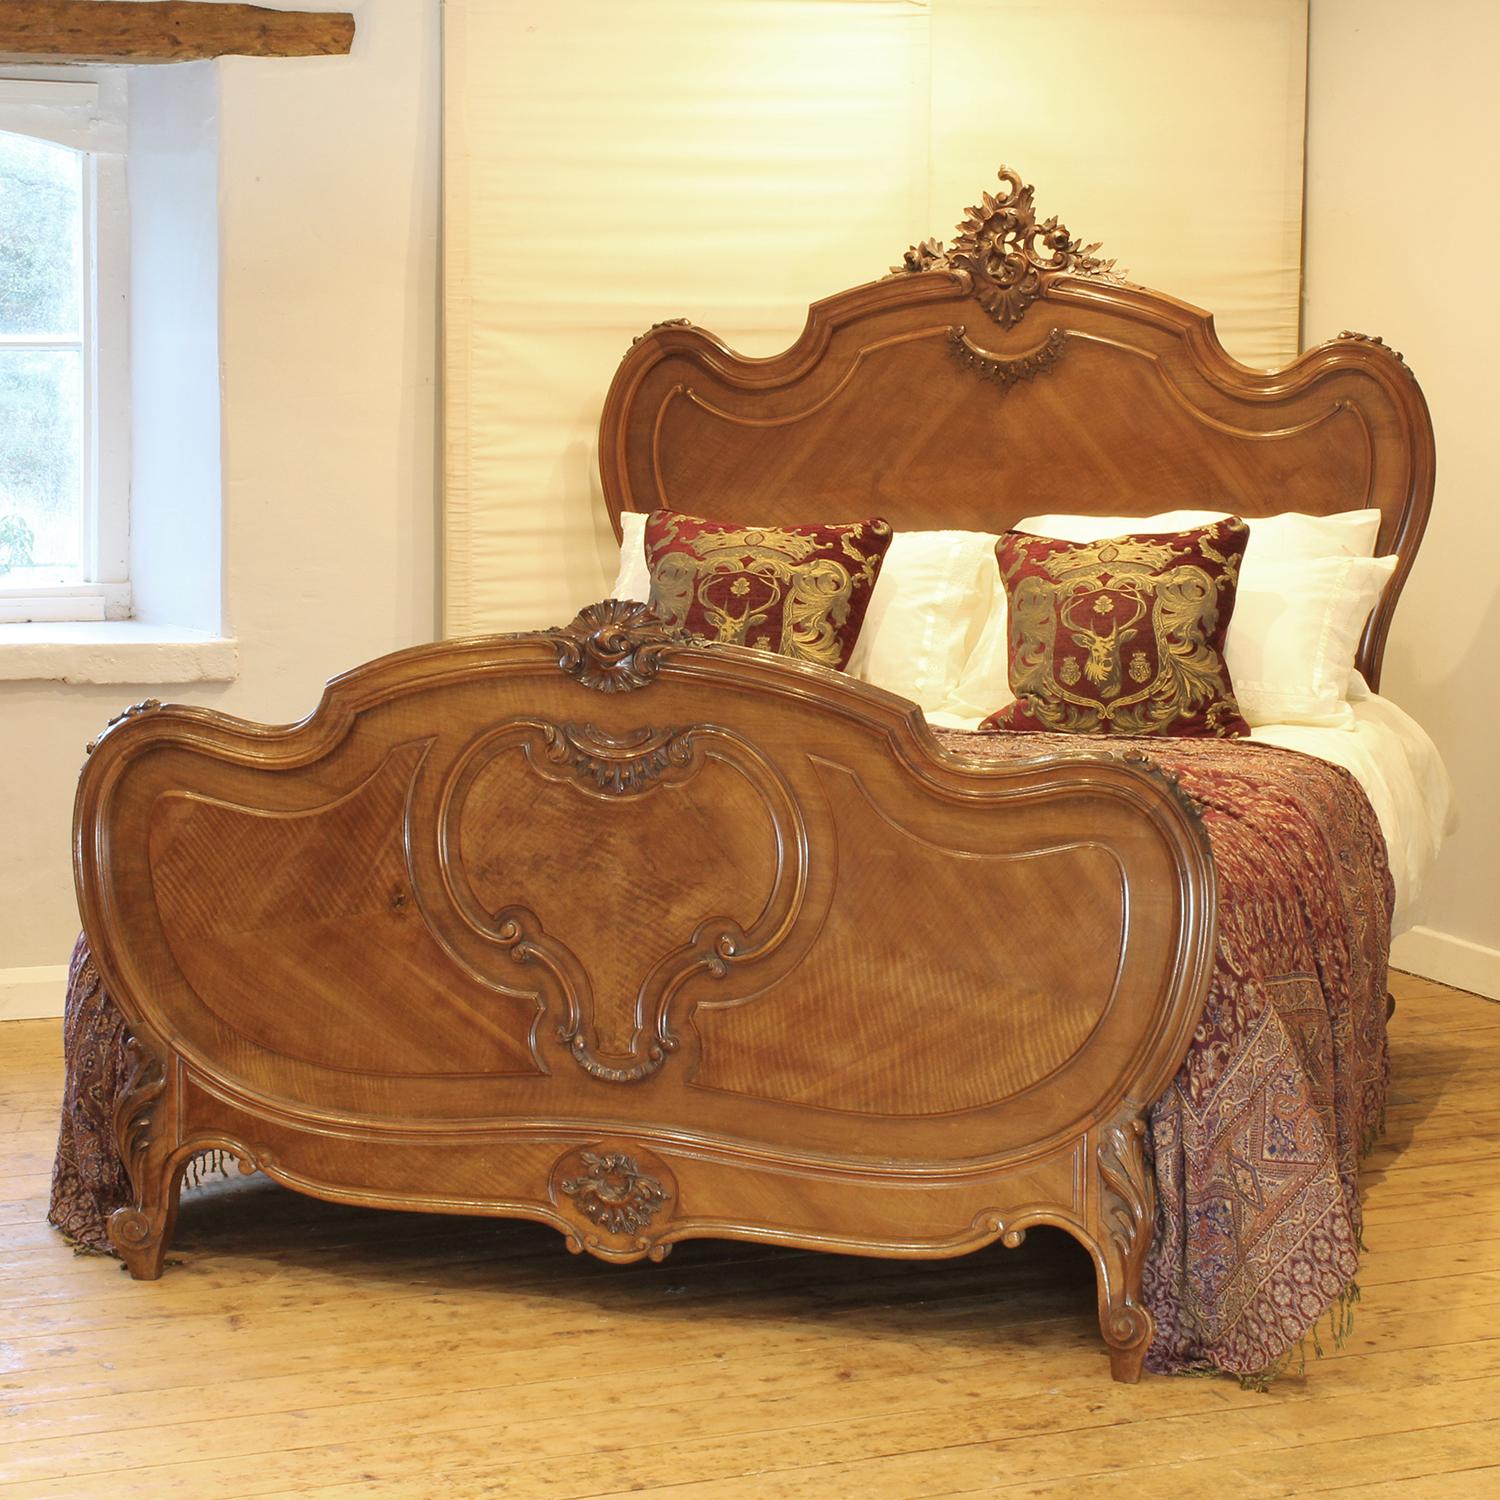 Ein antikes Bett im Stil Louis XV aus Nussbaum mit Rokokoformen und feiner Schnitzerei.

Dieses Bett eignet sich für ein britisches Kingsize- oder amerikanisches Queensize-Bett mit einer Breite von 150 cm (60 Zoll) und einer Matratze mit